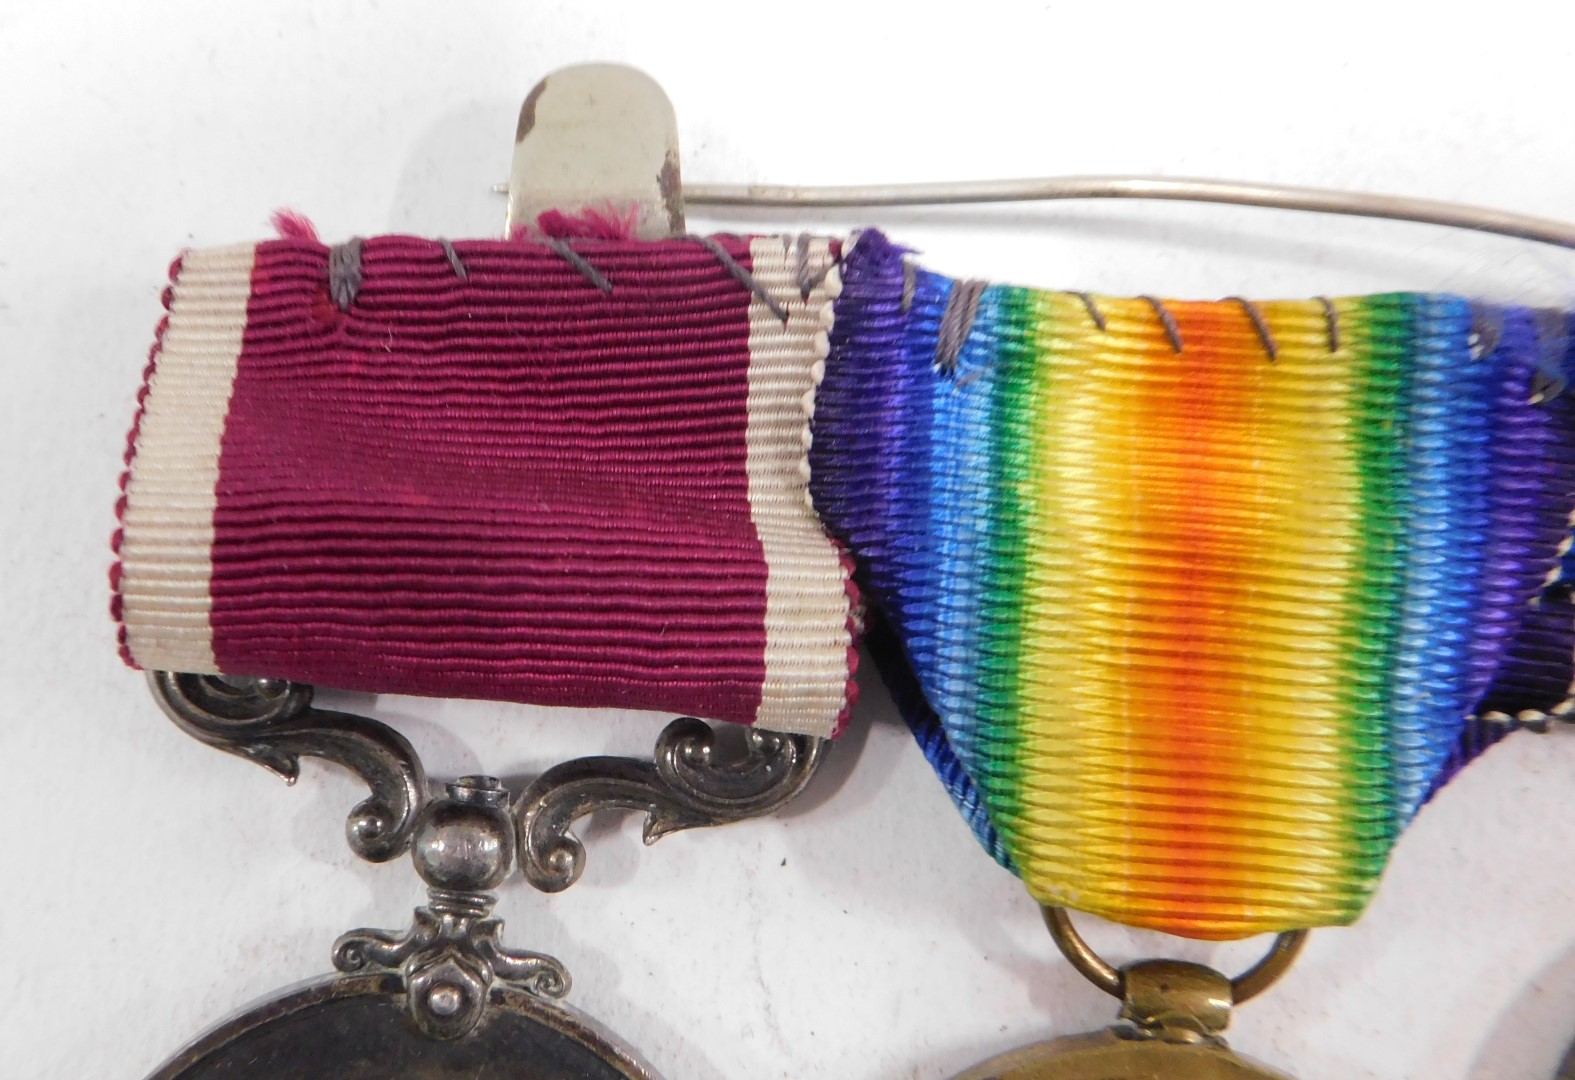 A World War I medal group, comprising 14-15 Star, George V medal, Great War for Civilisation medal, - Image 4 of 4